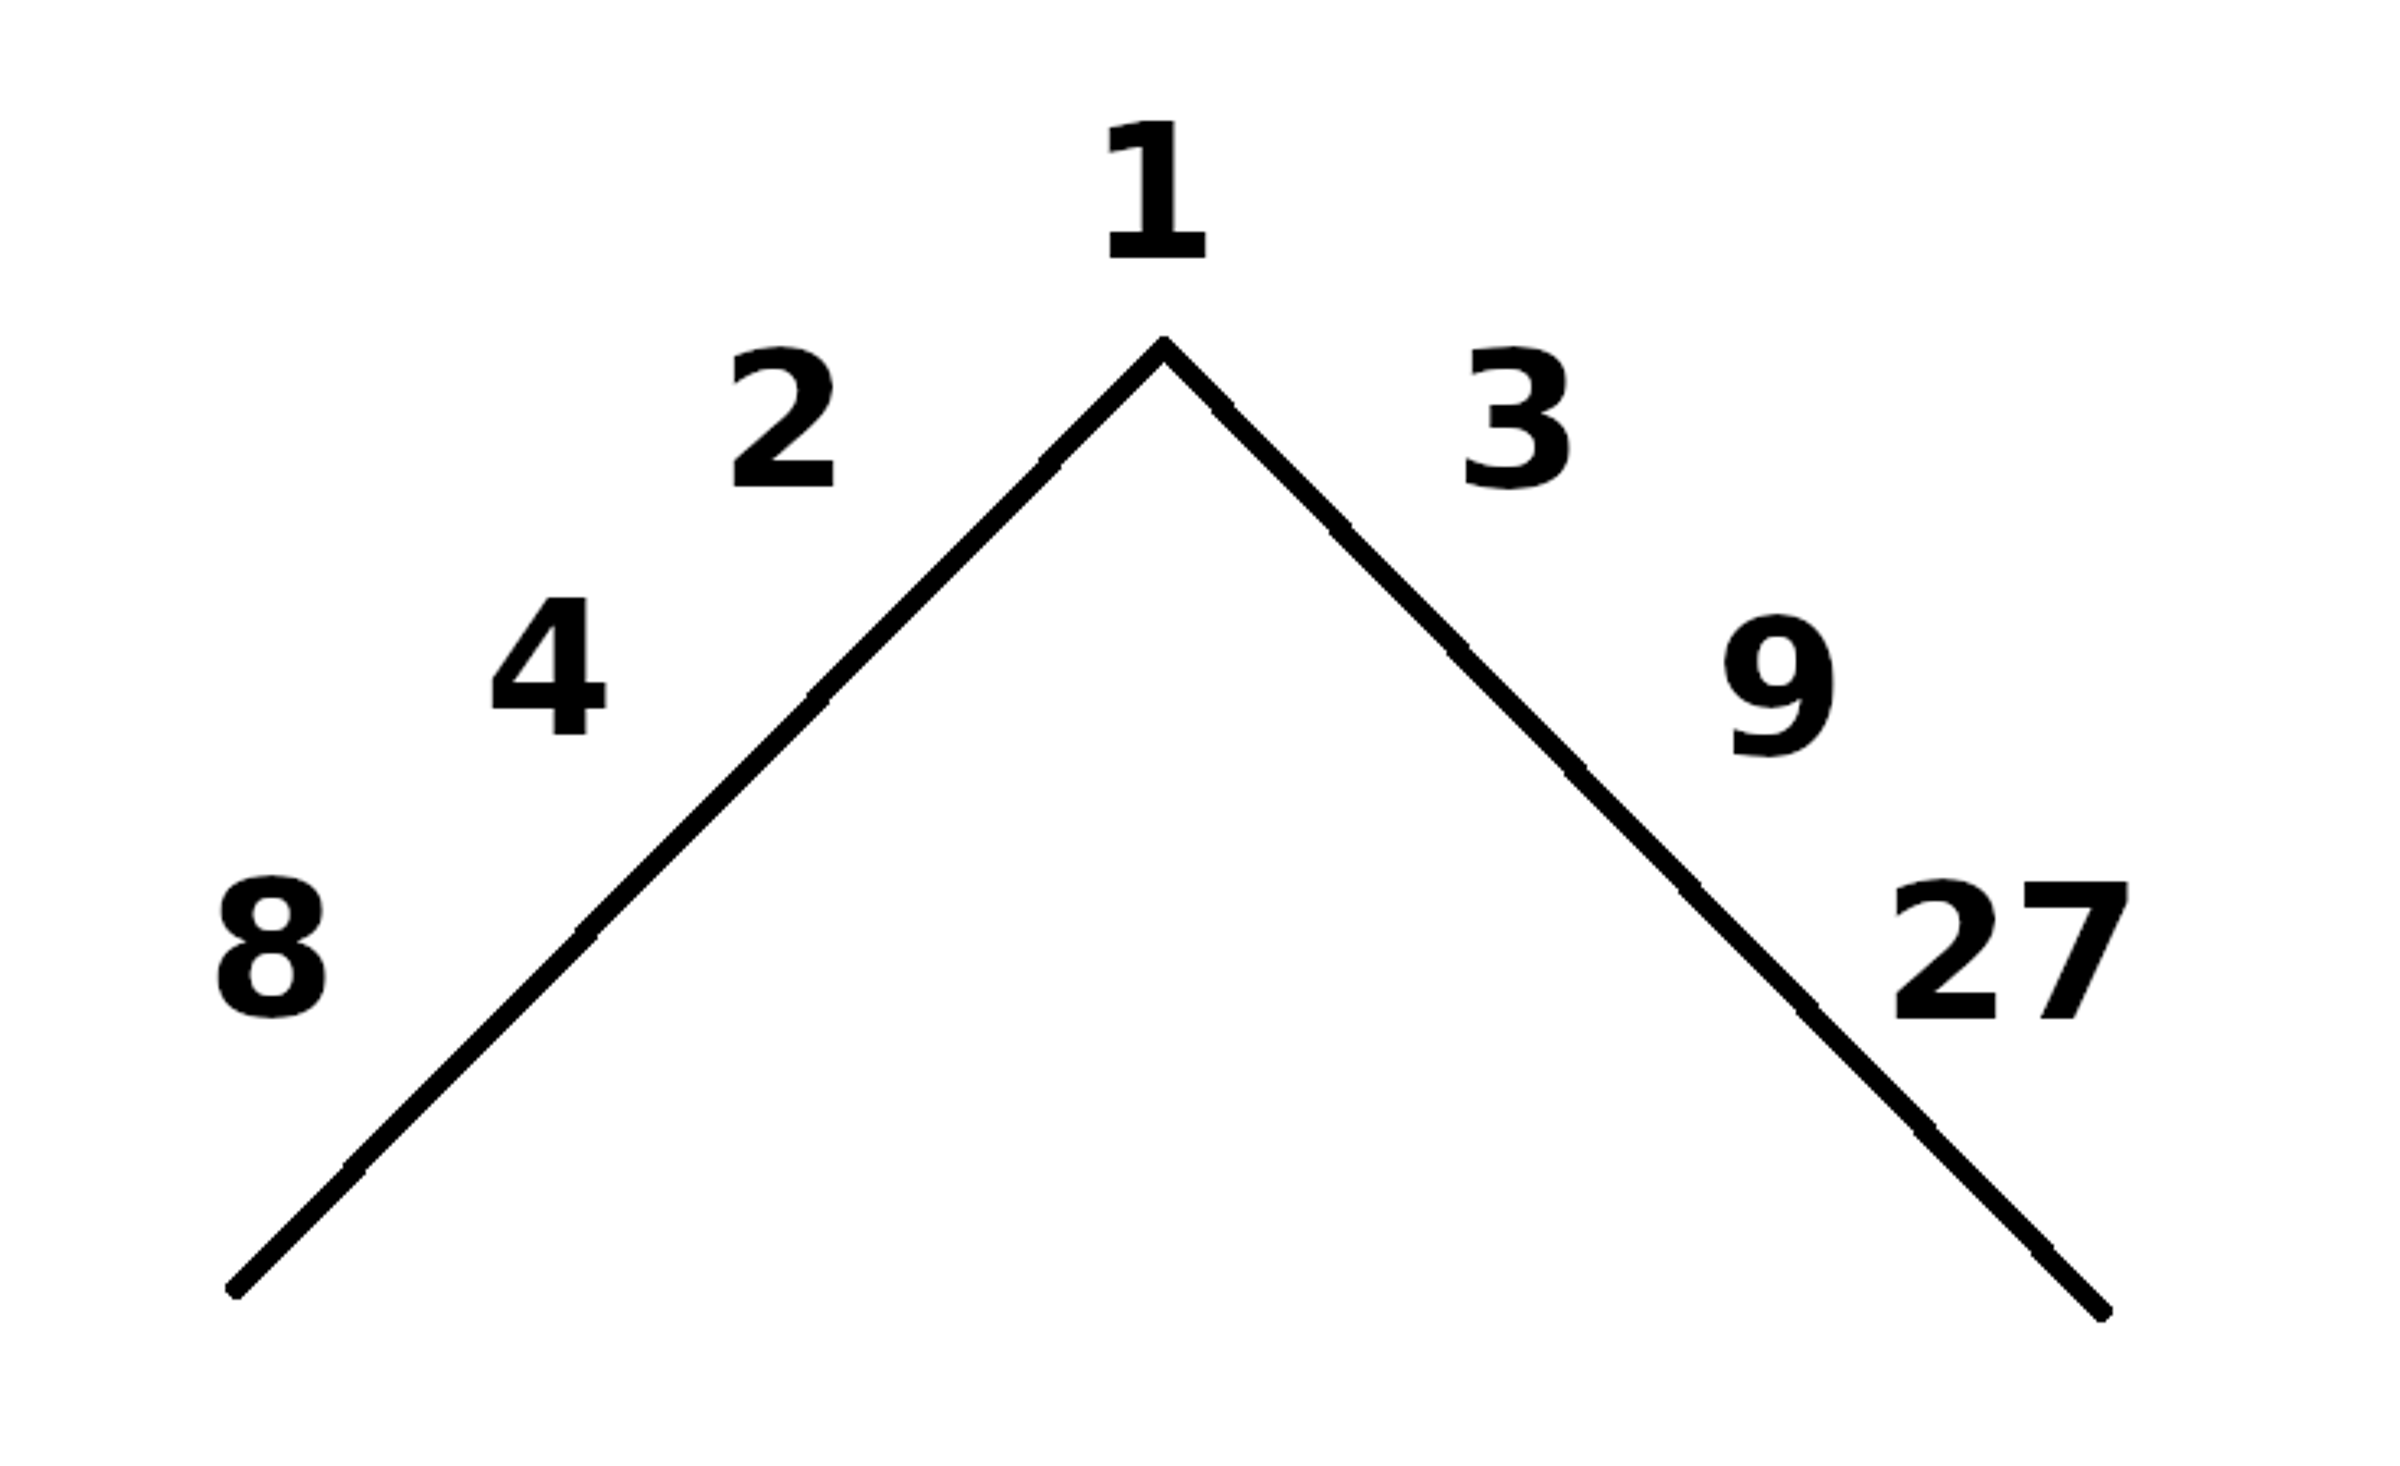 Dwa szeregi liczb wzdłuż dwu ukośnych linii o wspólnym wierzchołku. Czytając wzdłuż lewej: 1, 2, 4, 8; wzdłuż prawej: 1, 3, 9, 27.